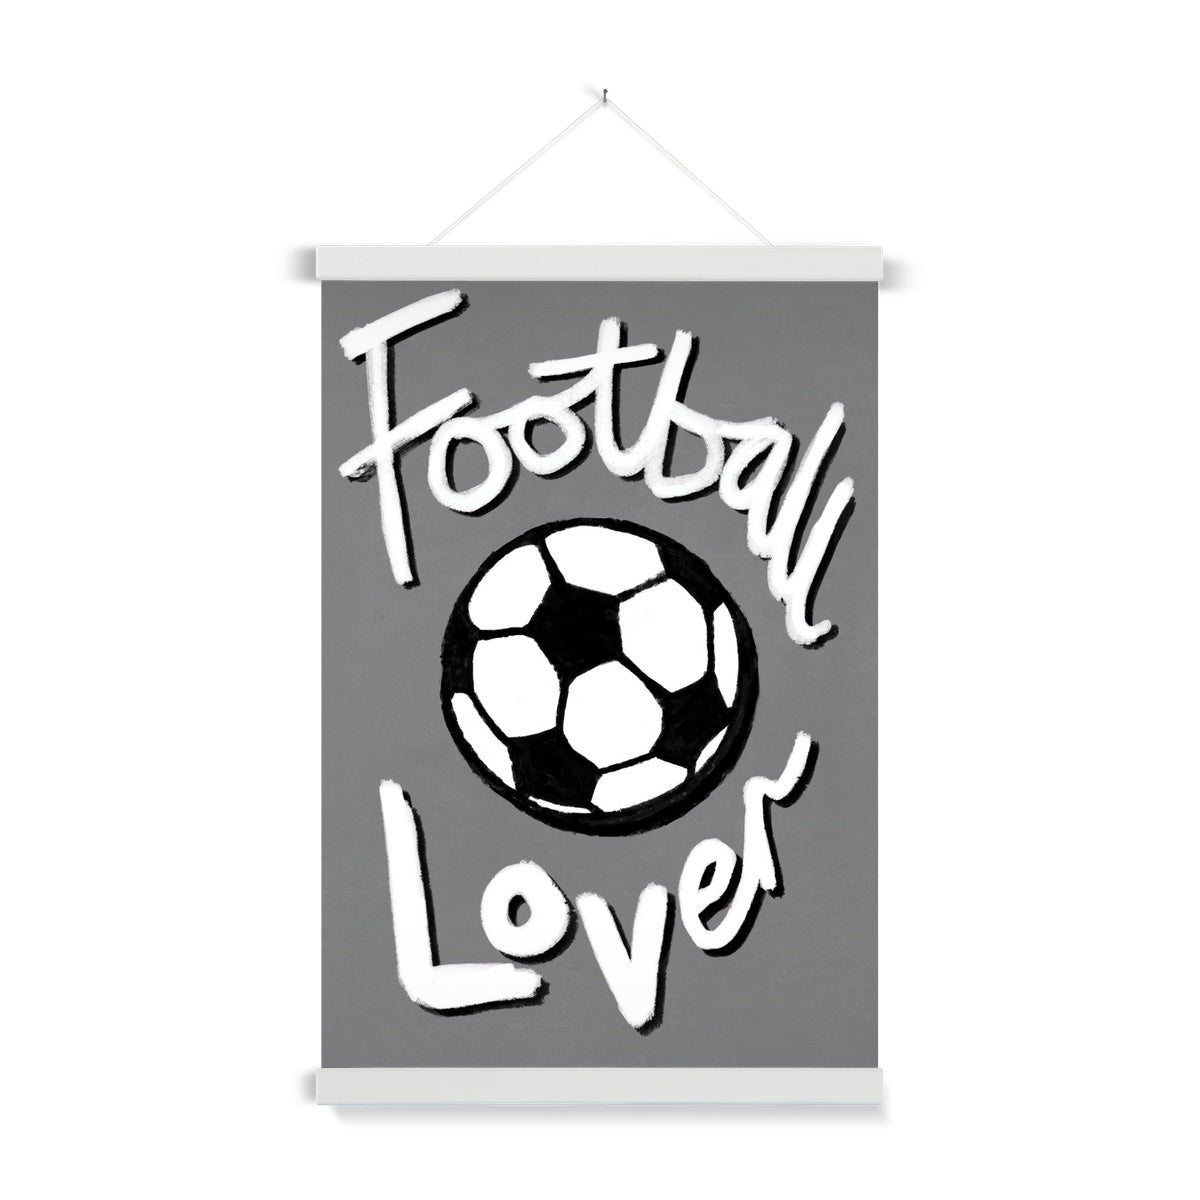 Football Lover Print - Grey, White, Black Fine Art Print with Hanger